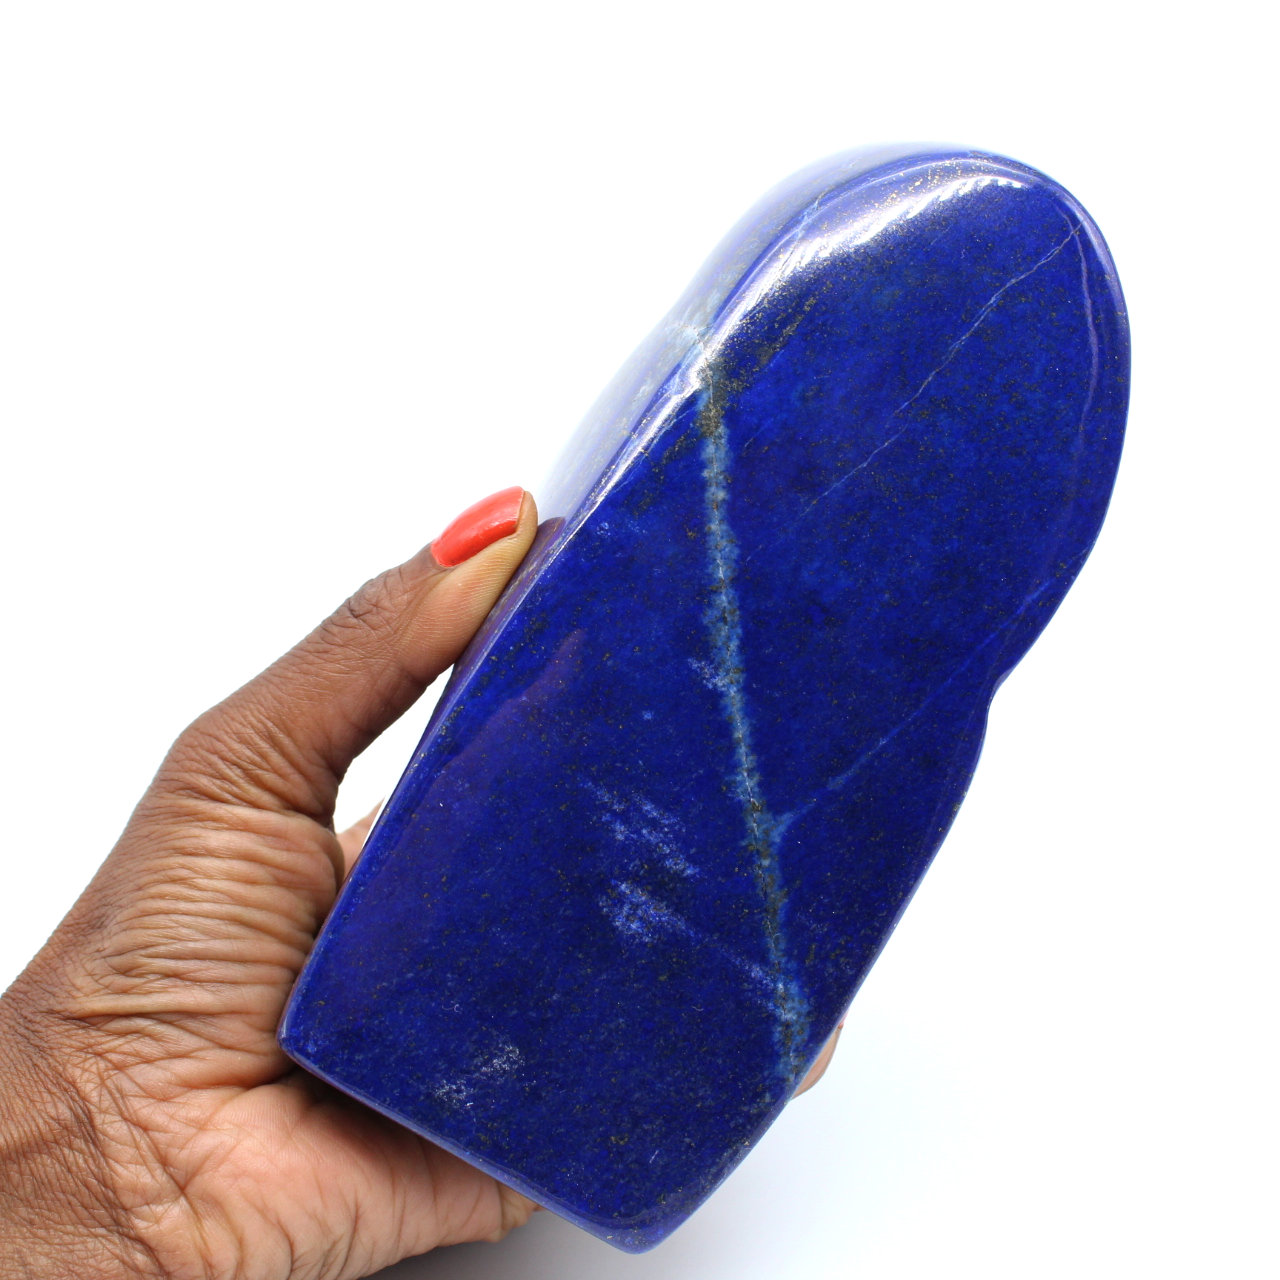 Large natural stone in Lapis-lazuli